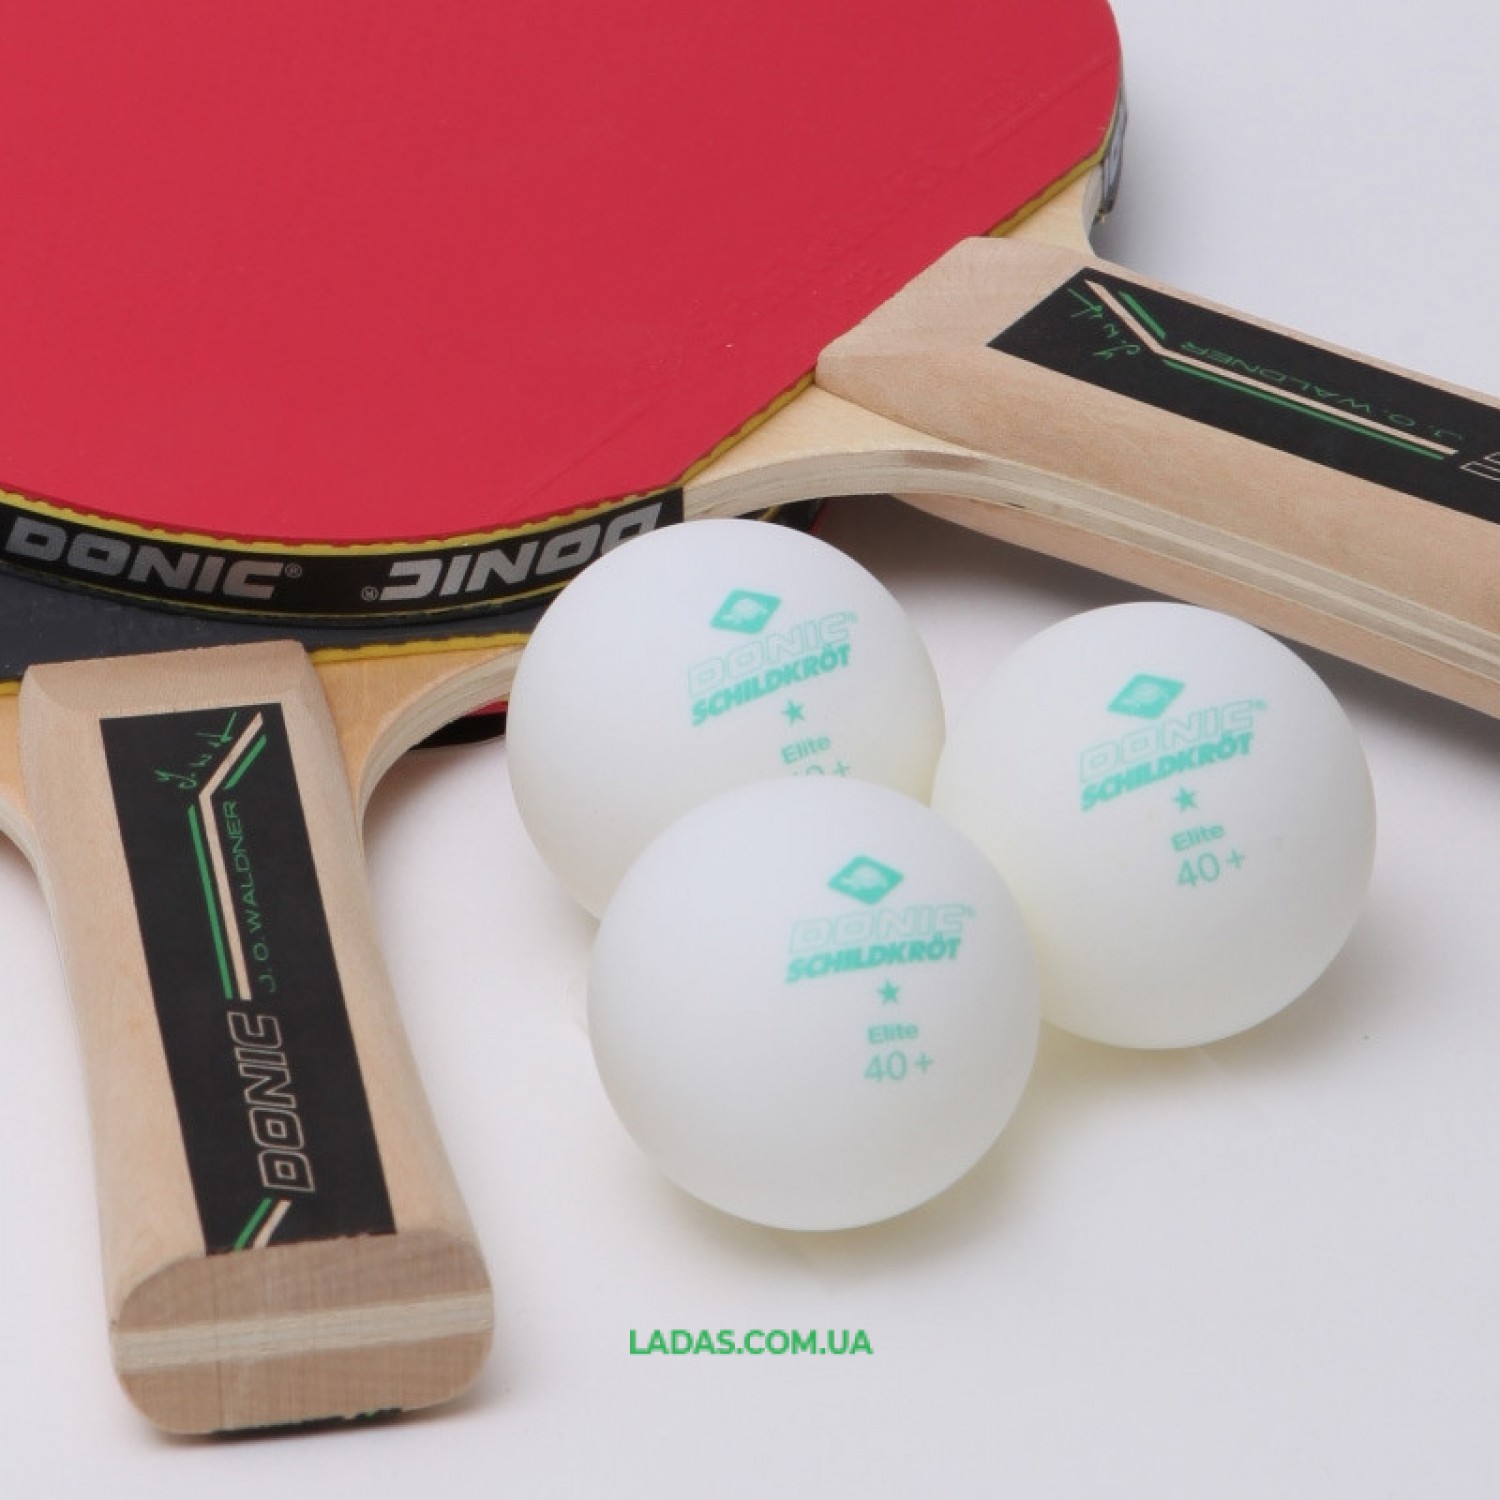 Набор для настольного тенниса 2 ракетки, 3 мяча DONIC LEVEL 400 WALDNER Реплика